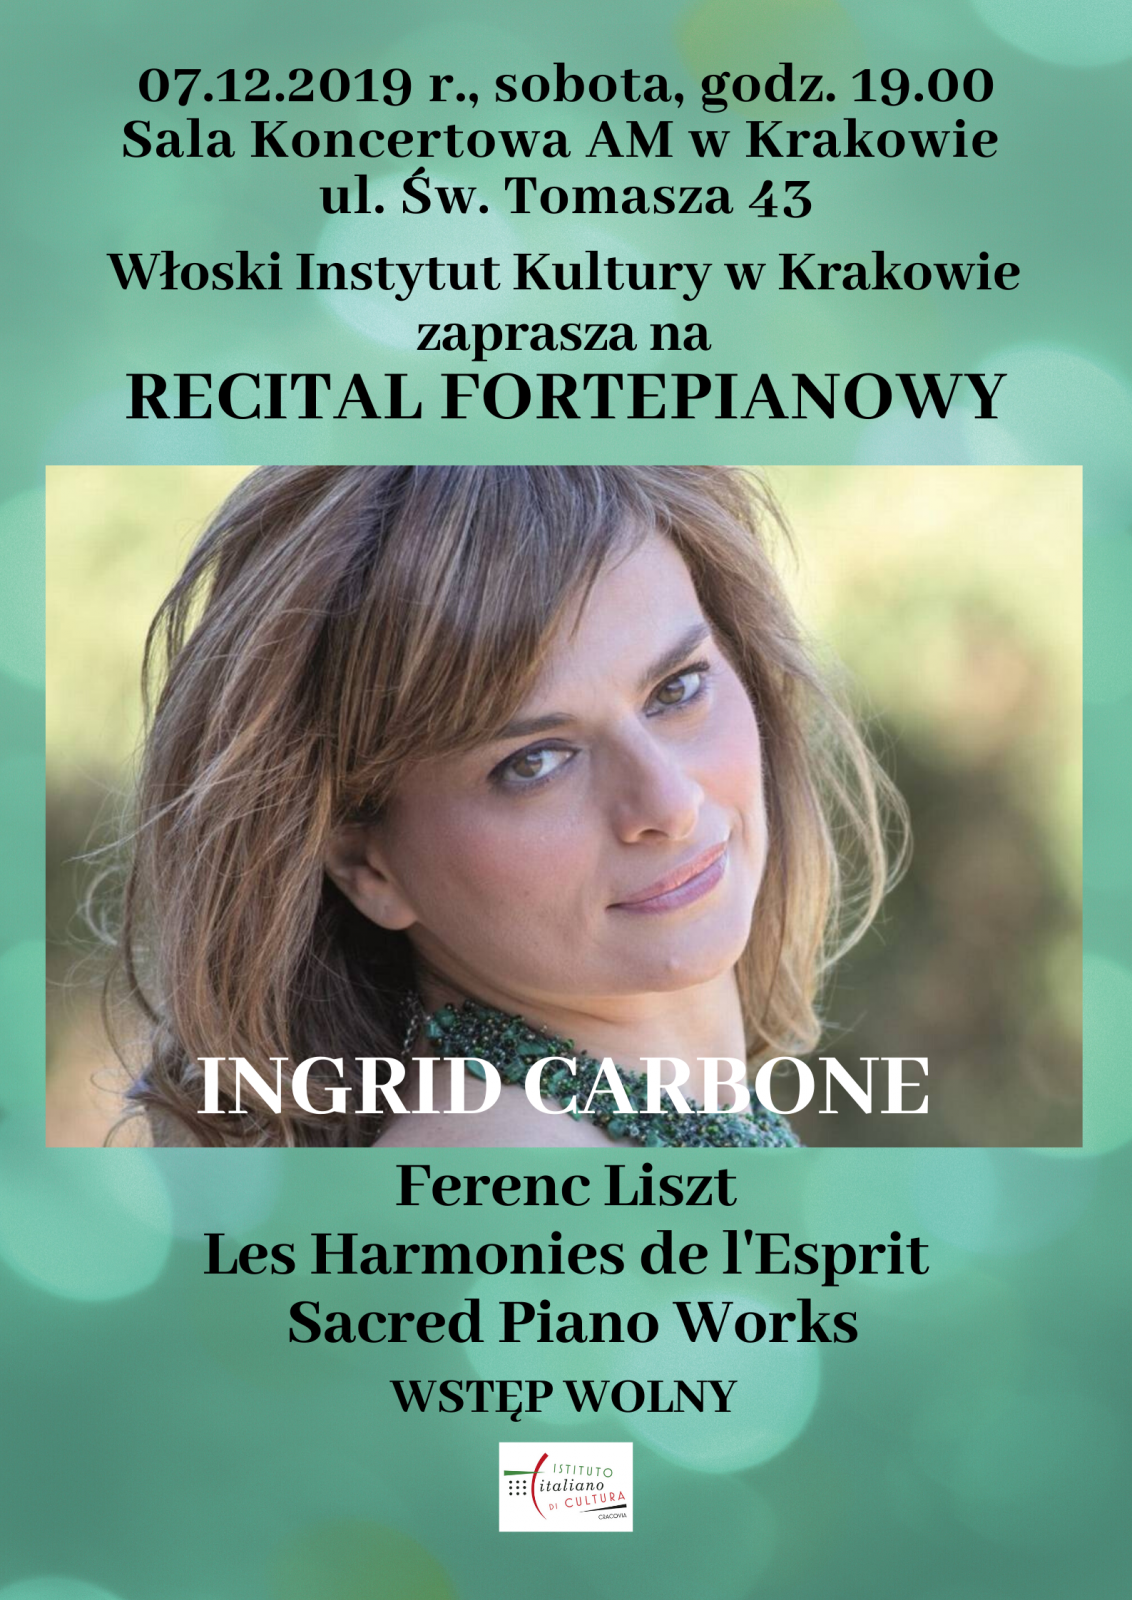 Ingrid Carbone - piano recital